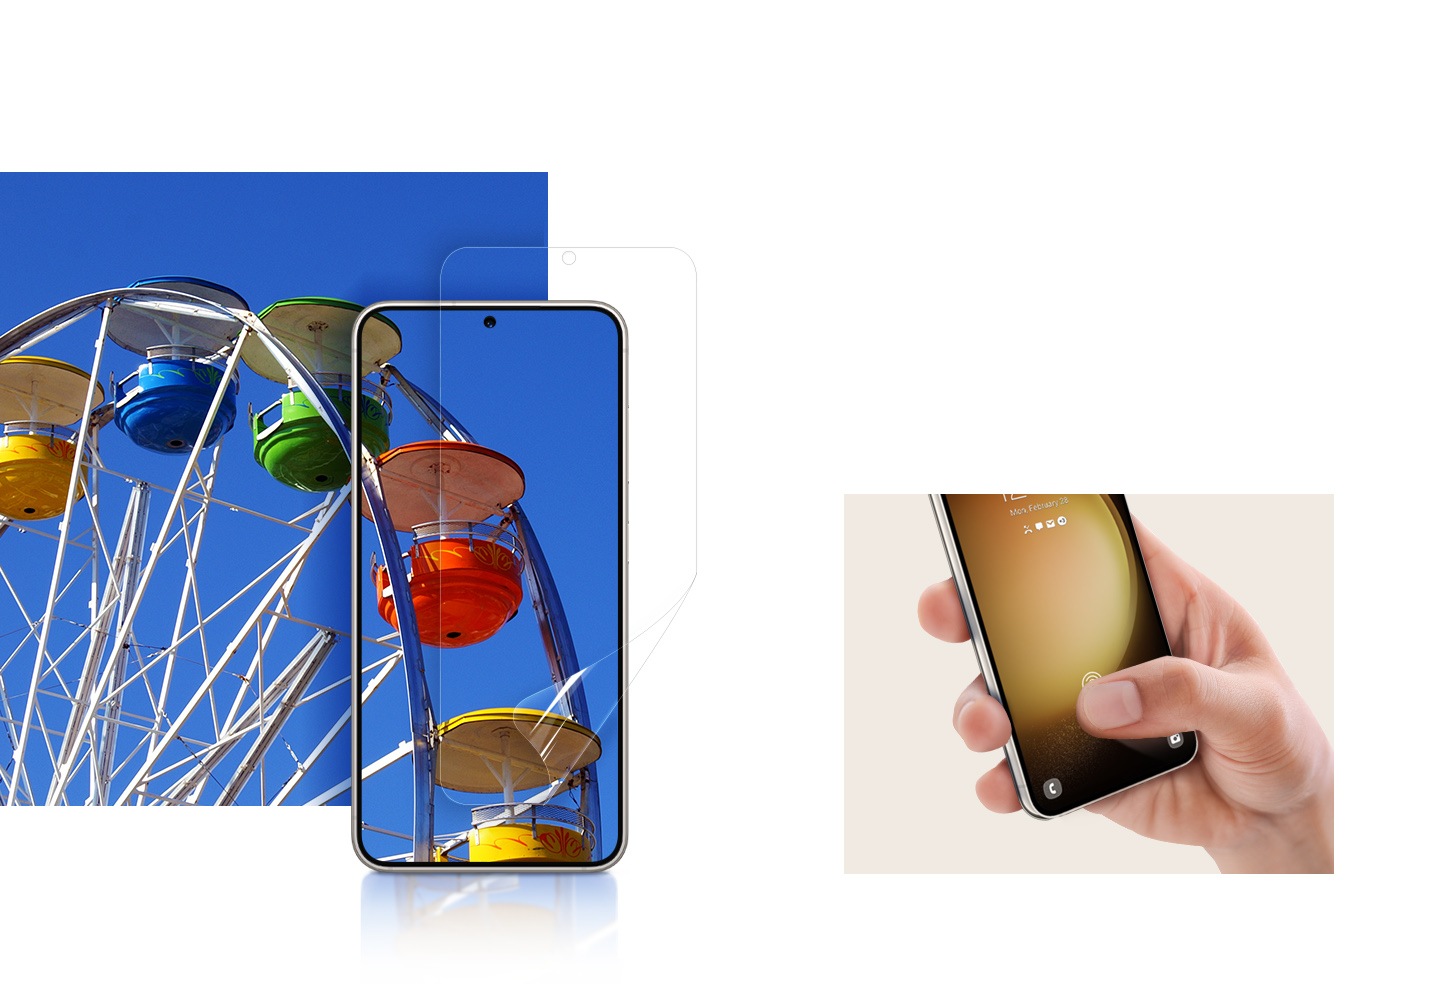 Một bàn tay đang cầm điện thoại có Dán Màn Hình khi ngón tay cái chạm nhẹ vào màn hình để thể hiện độ nhạy cao của miếng dán. Một chiếc điện thoại Galaxy S23 có Dán Màn Hình được đặt trên một bức tranh đầy màu sắc có thể nhìn thấy rõ qua thiết bị như nhìn thấy qua kính.